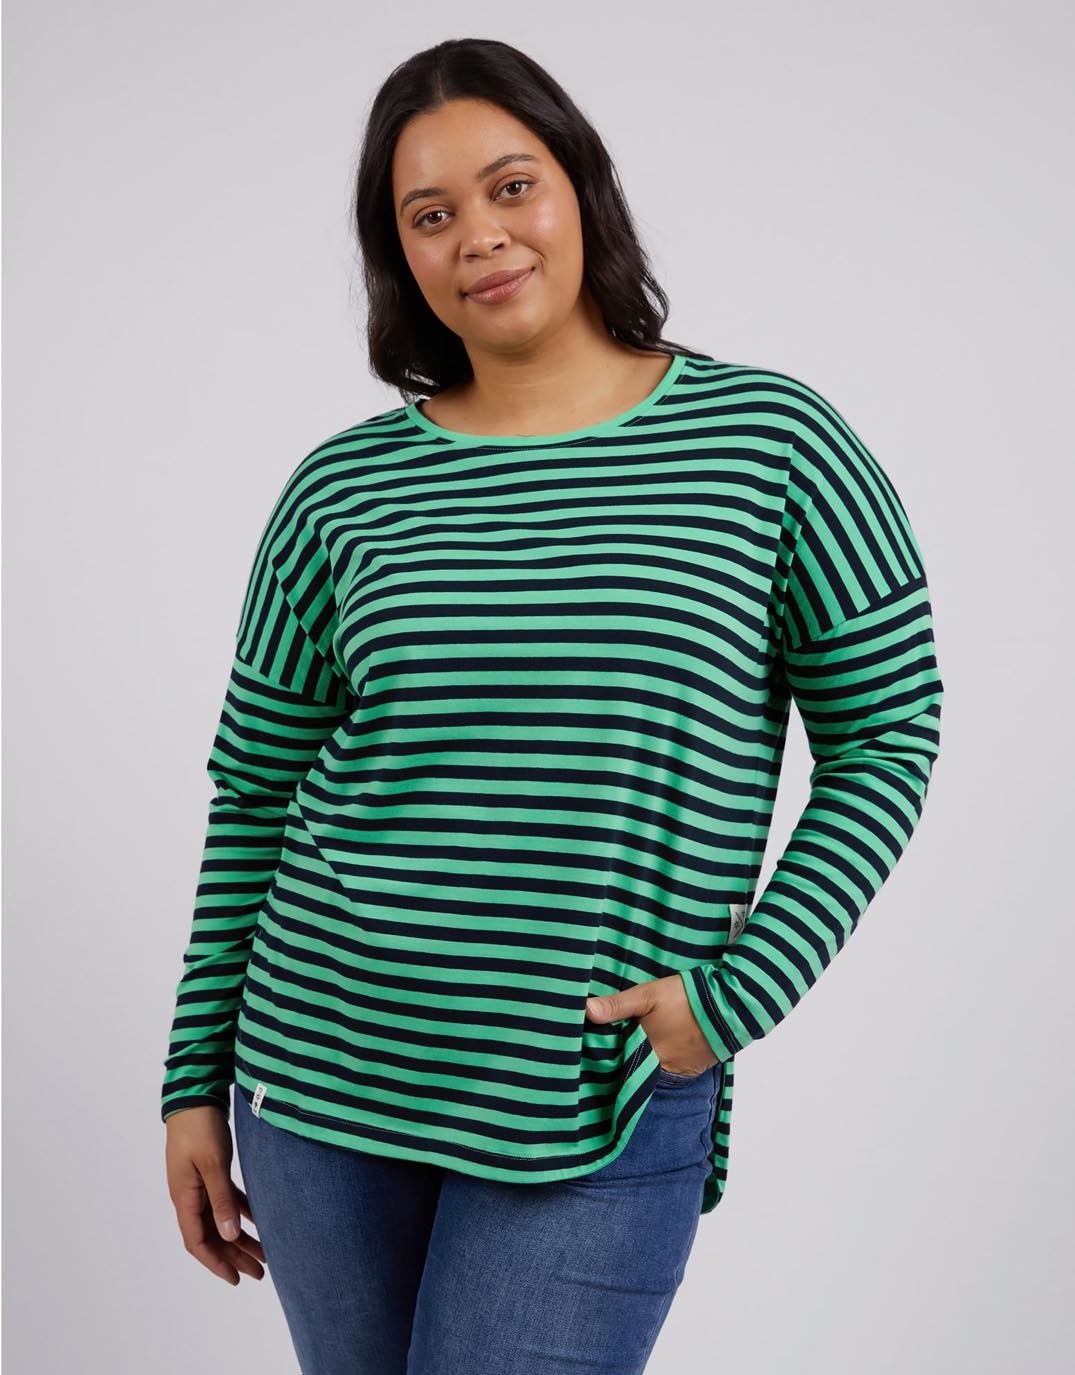 elm-lauren-long-sleeve-stripe-tee-meadow-navy-stripe-womens-clothing